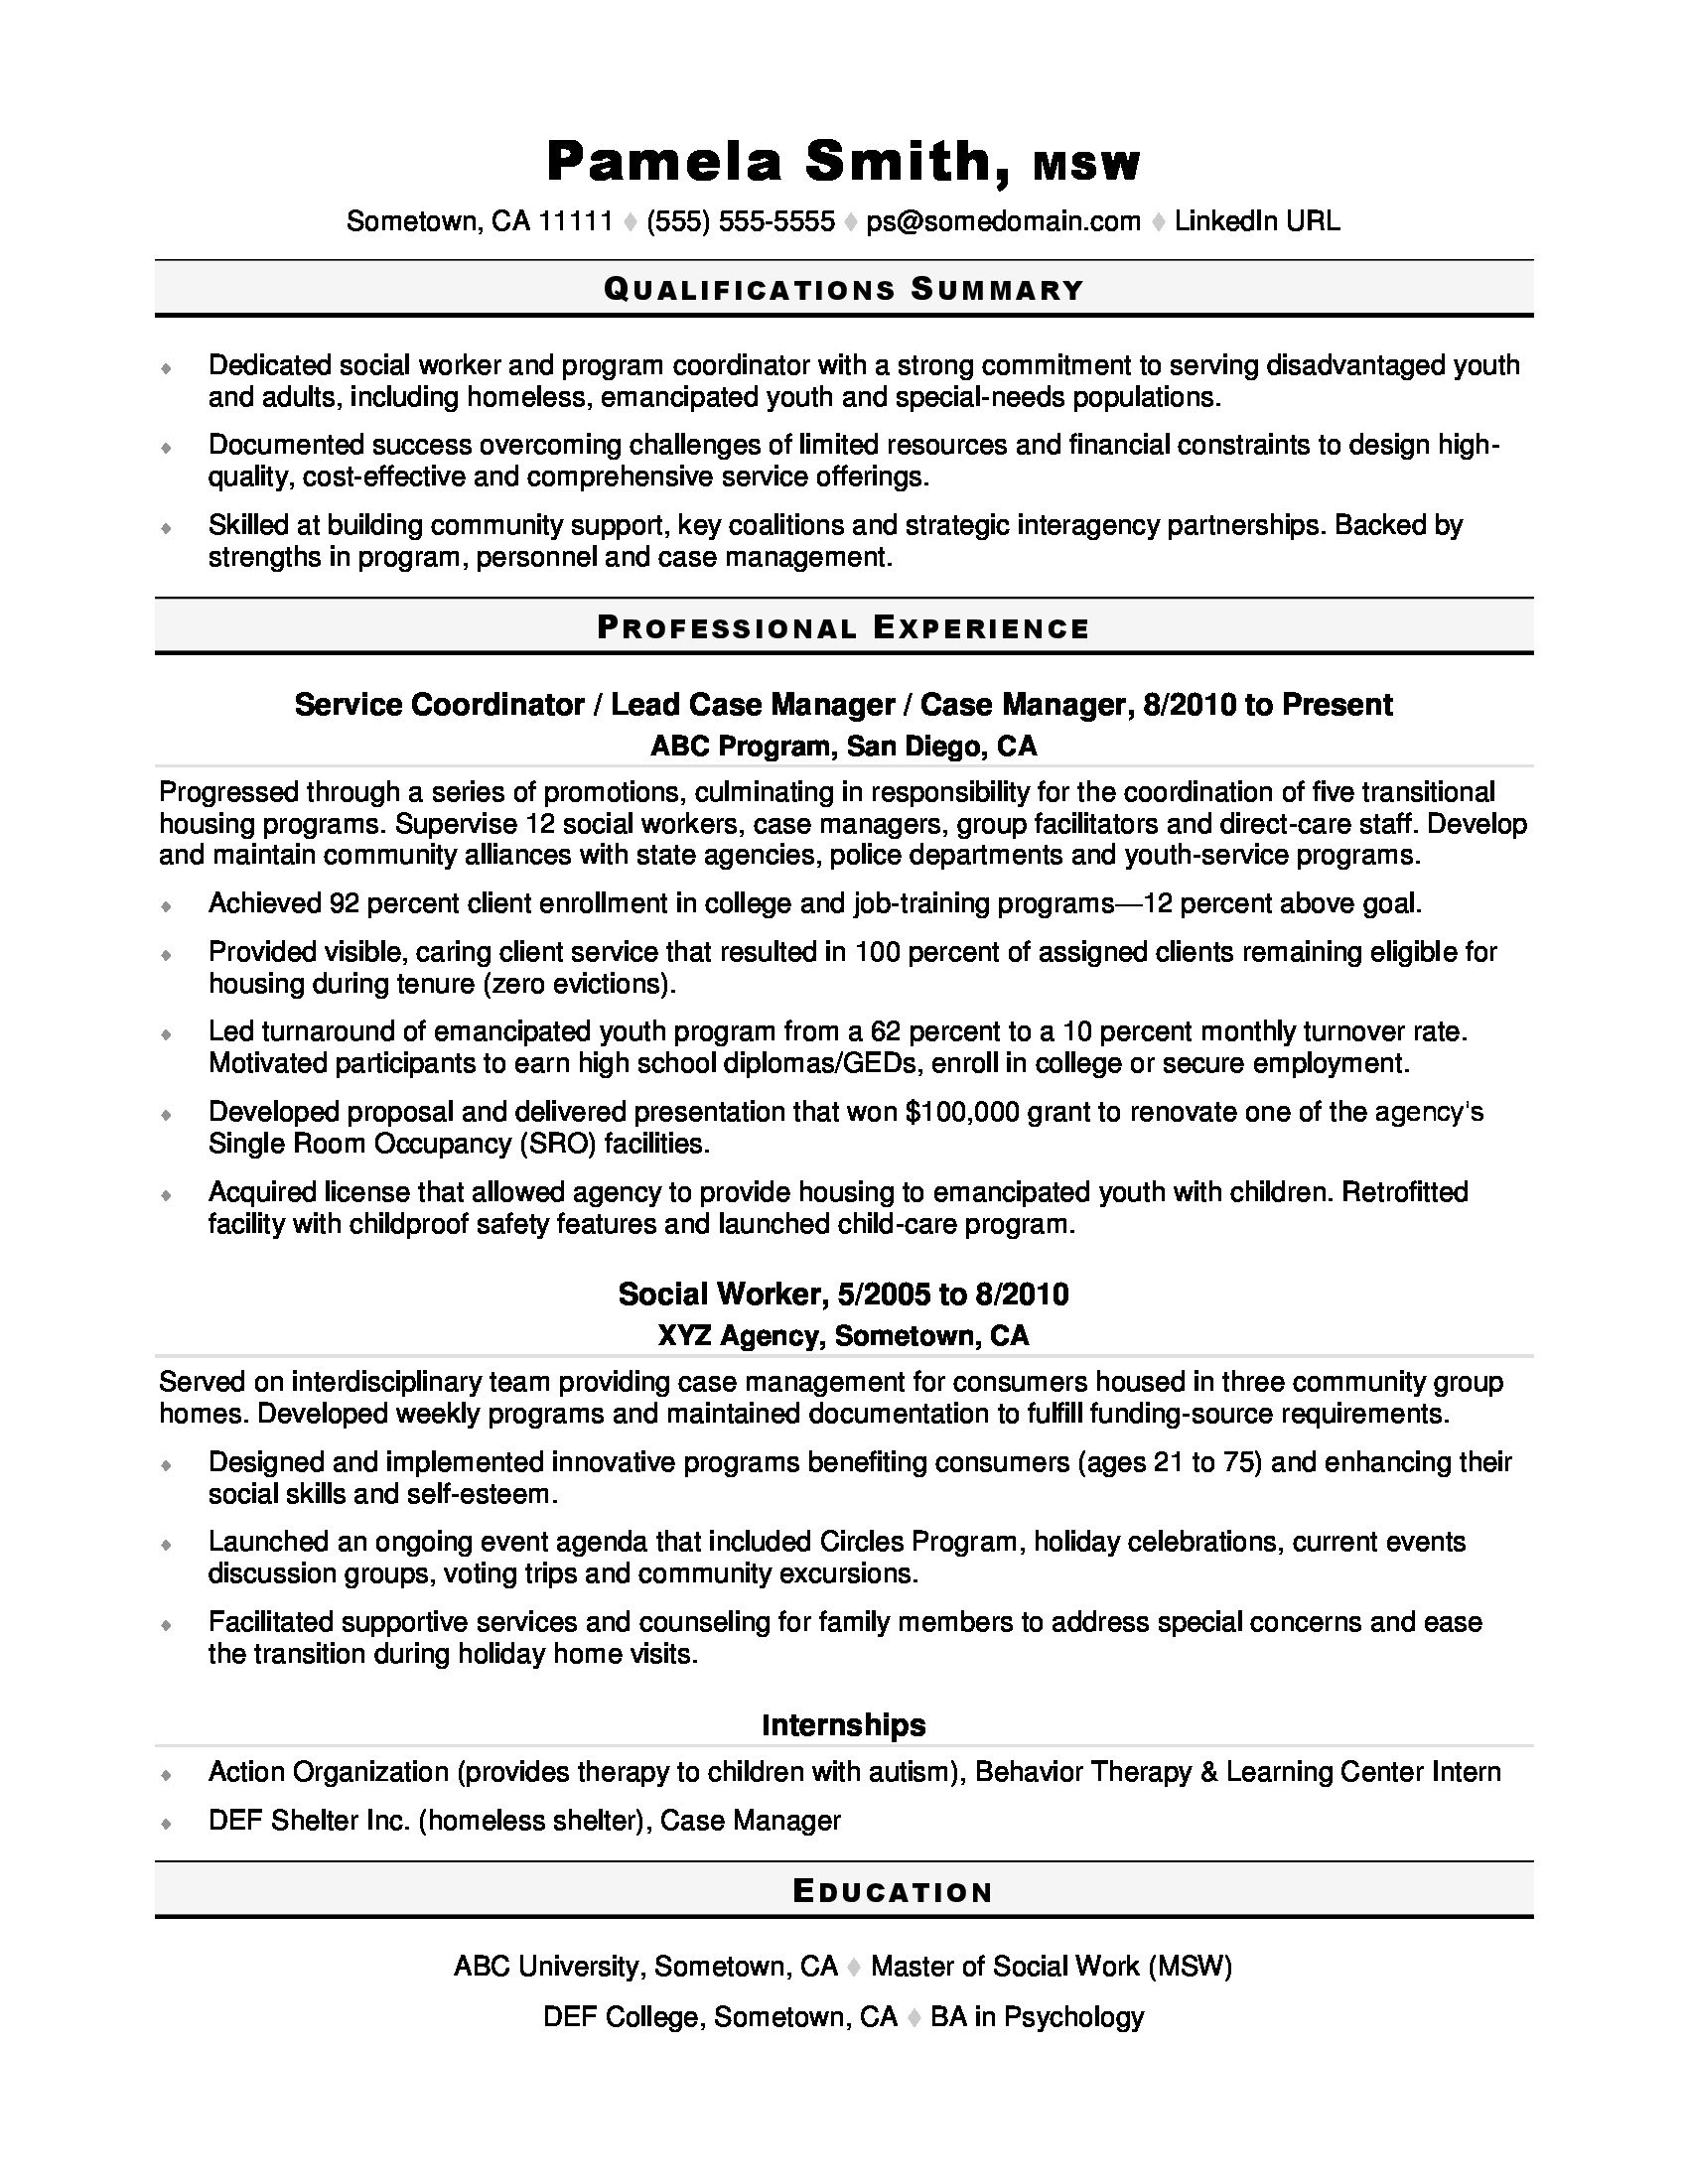 Sample Resume Of Hospital social Worker social Work Resume Monster.com